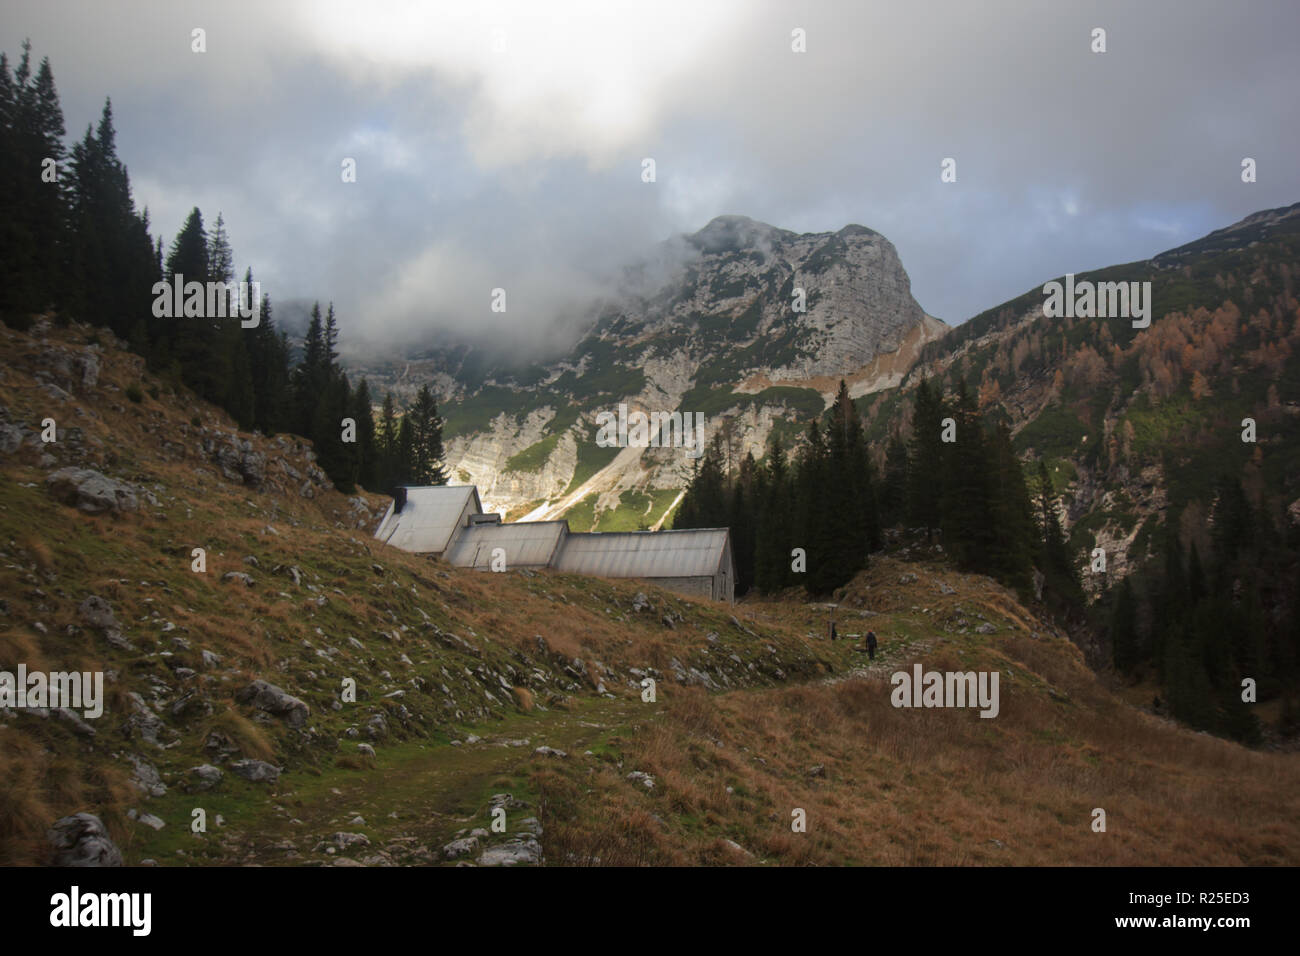 Duplje chalet de montagne et mont Velika Baba en arrière-plan, paysage des Alpes juliennes, sentier Alpe Adria, Slovénie, Europe centrale Banque D'Images